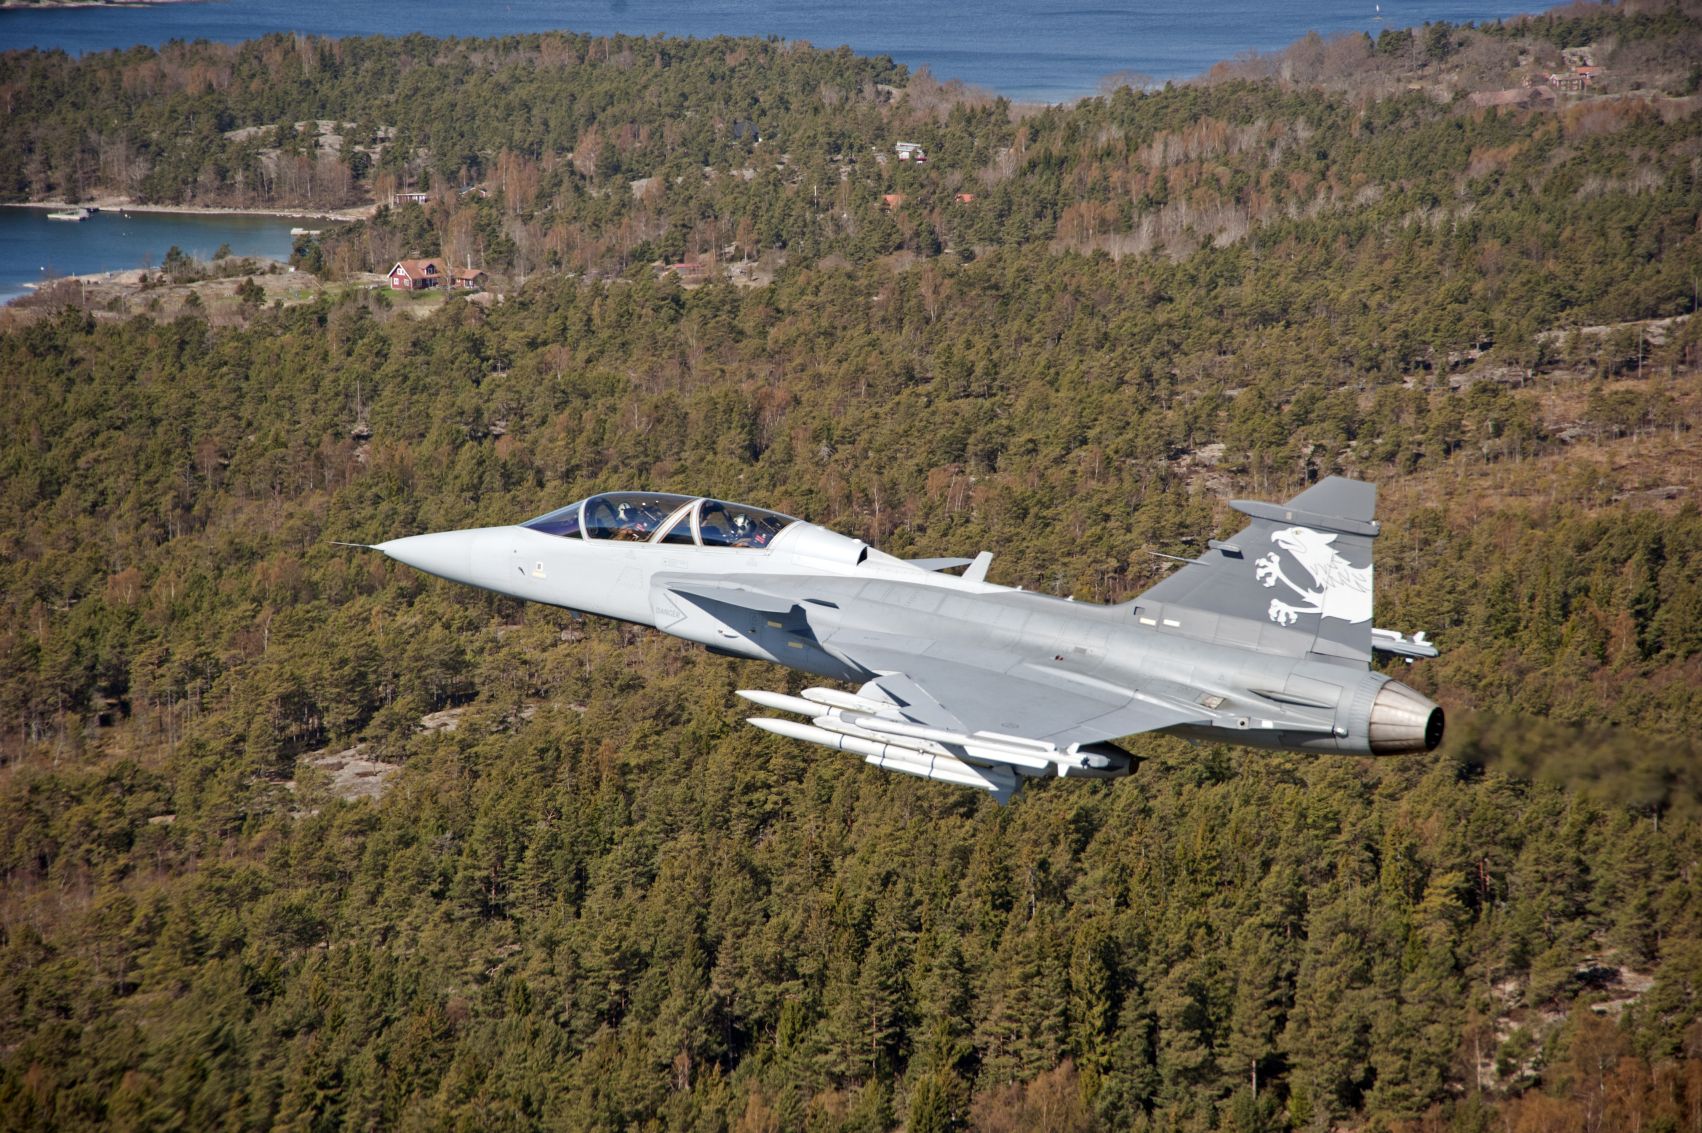 A svéd légierő megrendelése mindenképp biztos jövőt jelent a típusnak